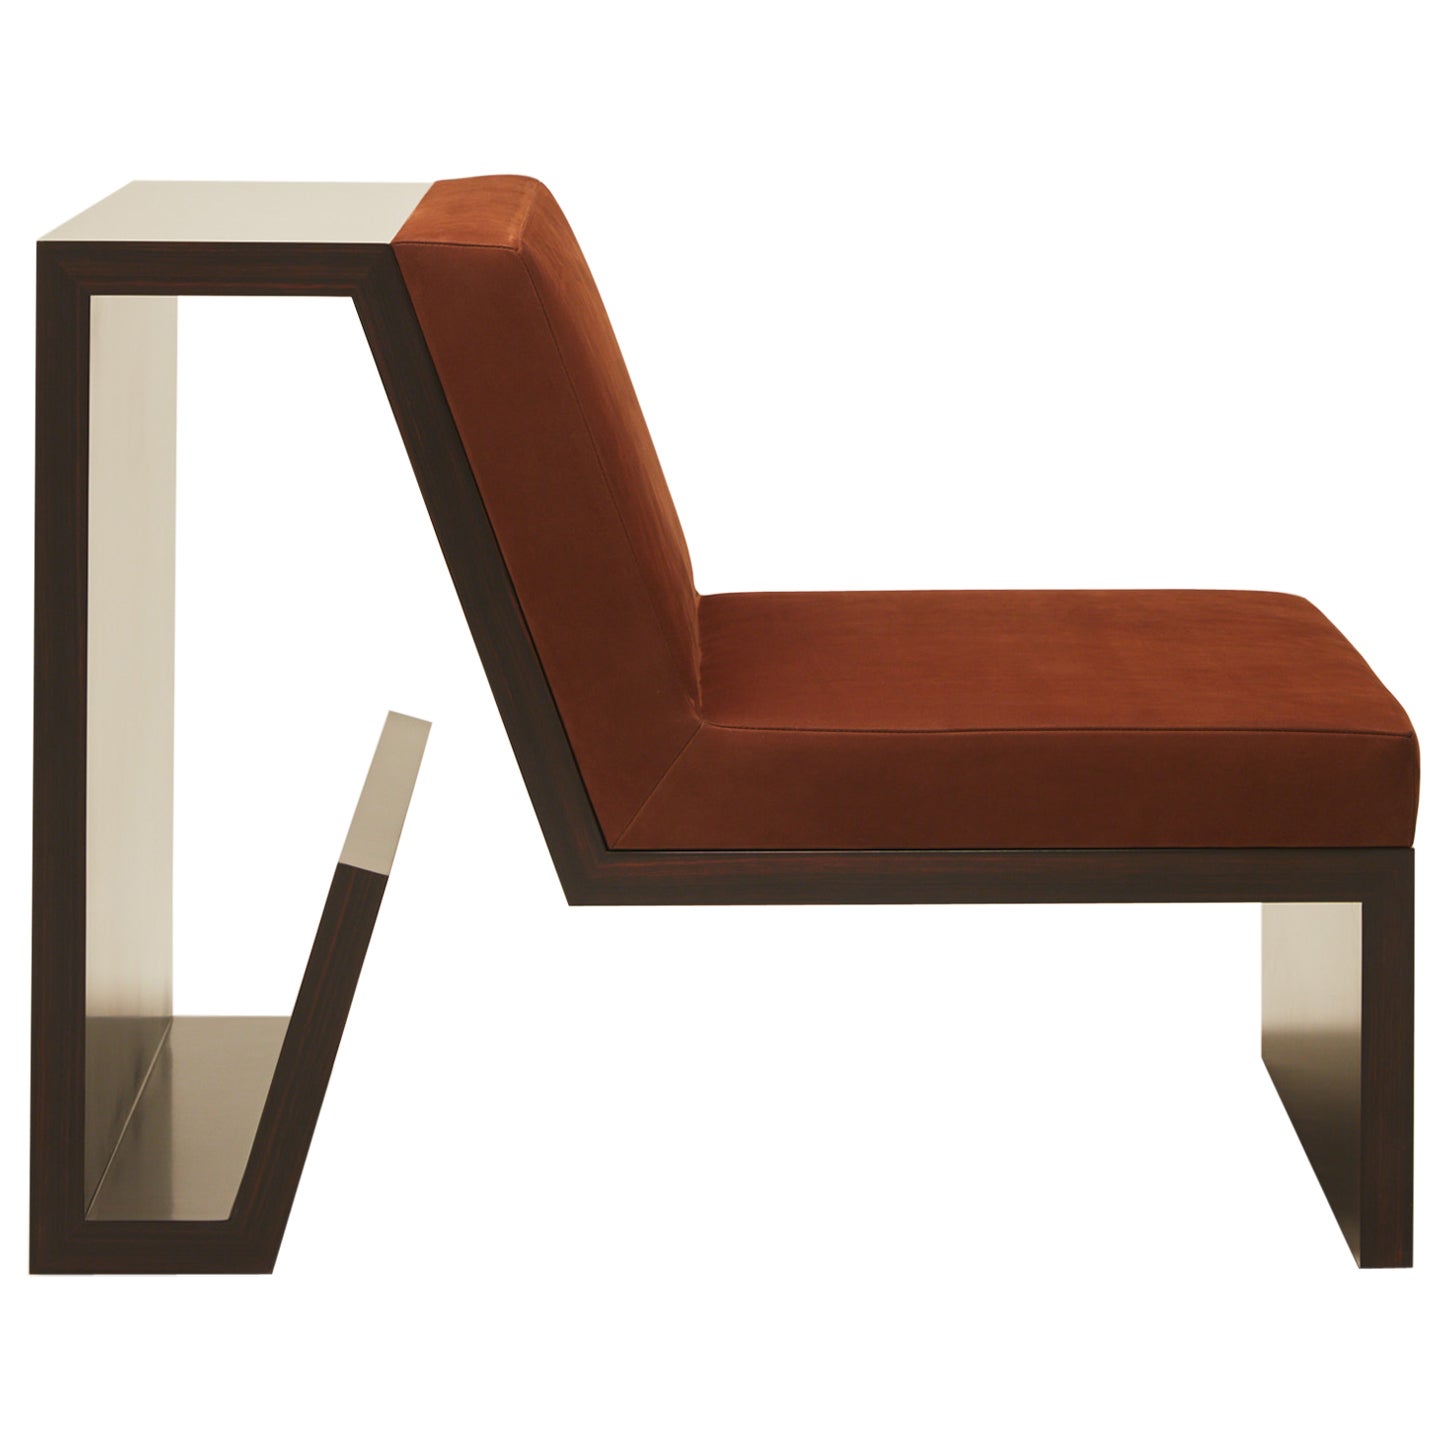 Continuous Chair - Handbearbeiteter Stuhl aus Holzfurnier und Lederpolsterung